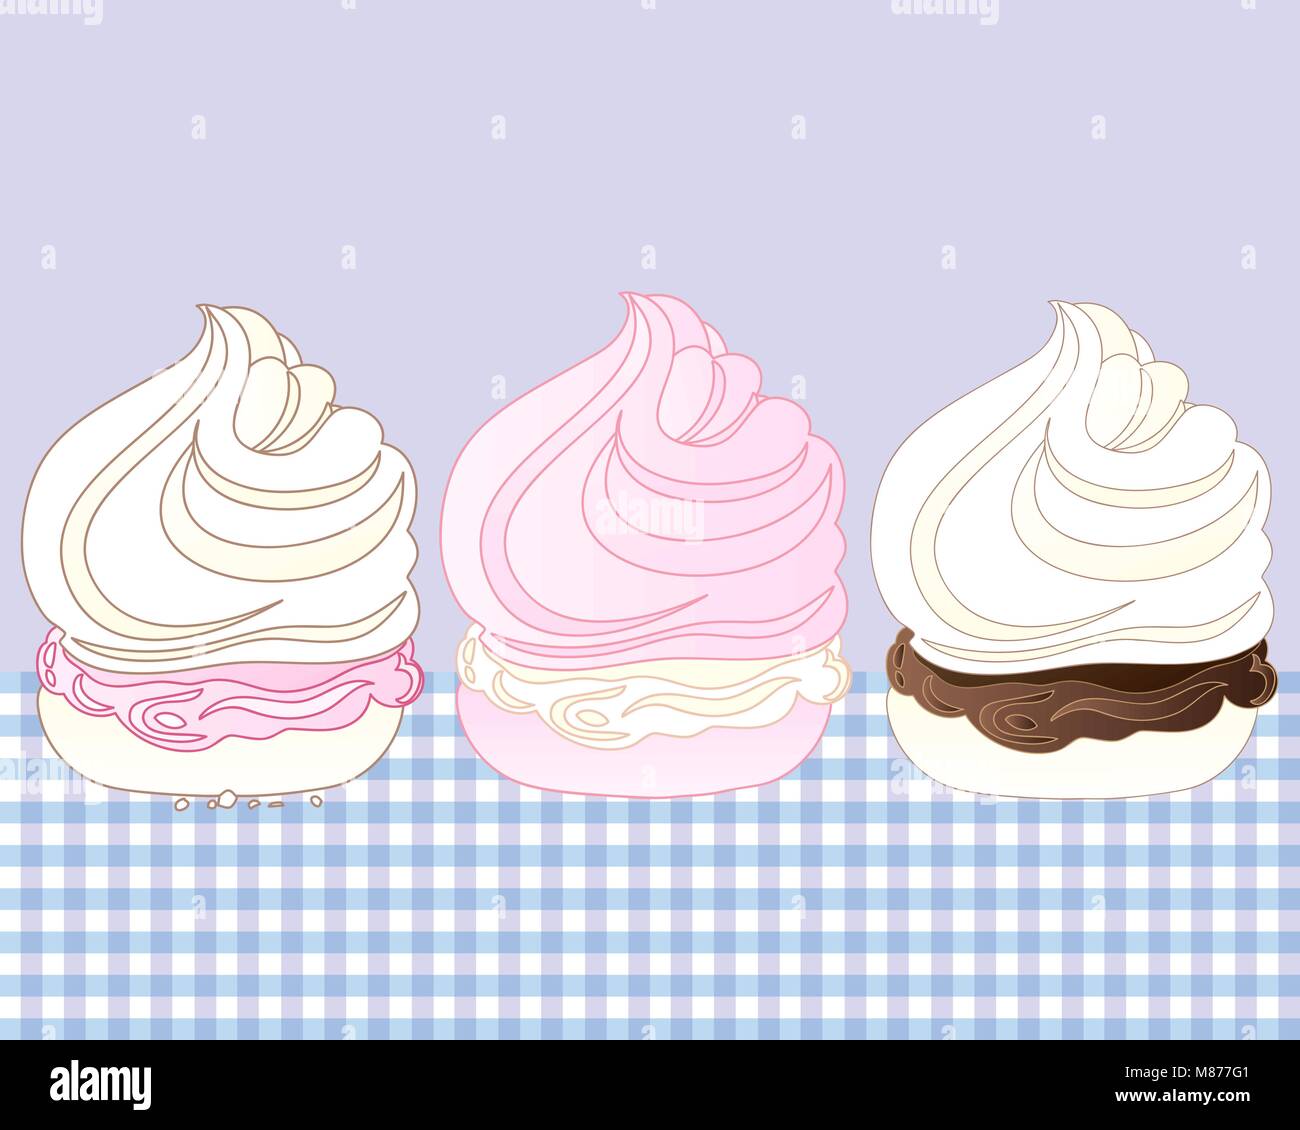 Un vecteur illustration en format eps 10 de trois desserts meringue douce avec diverses saveurs sur une nappe en vichy Illustration de Vecteur